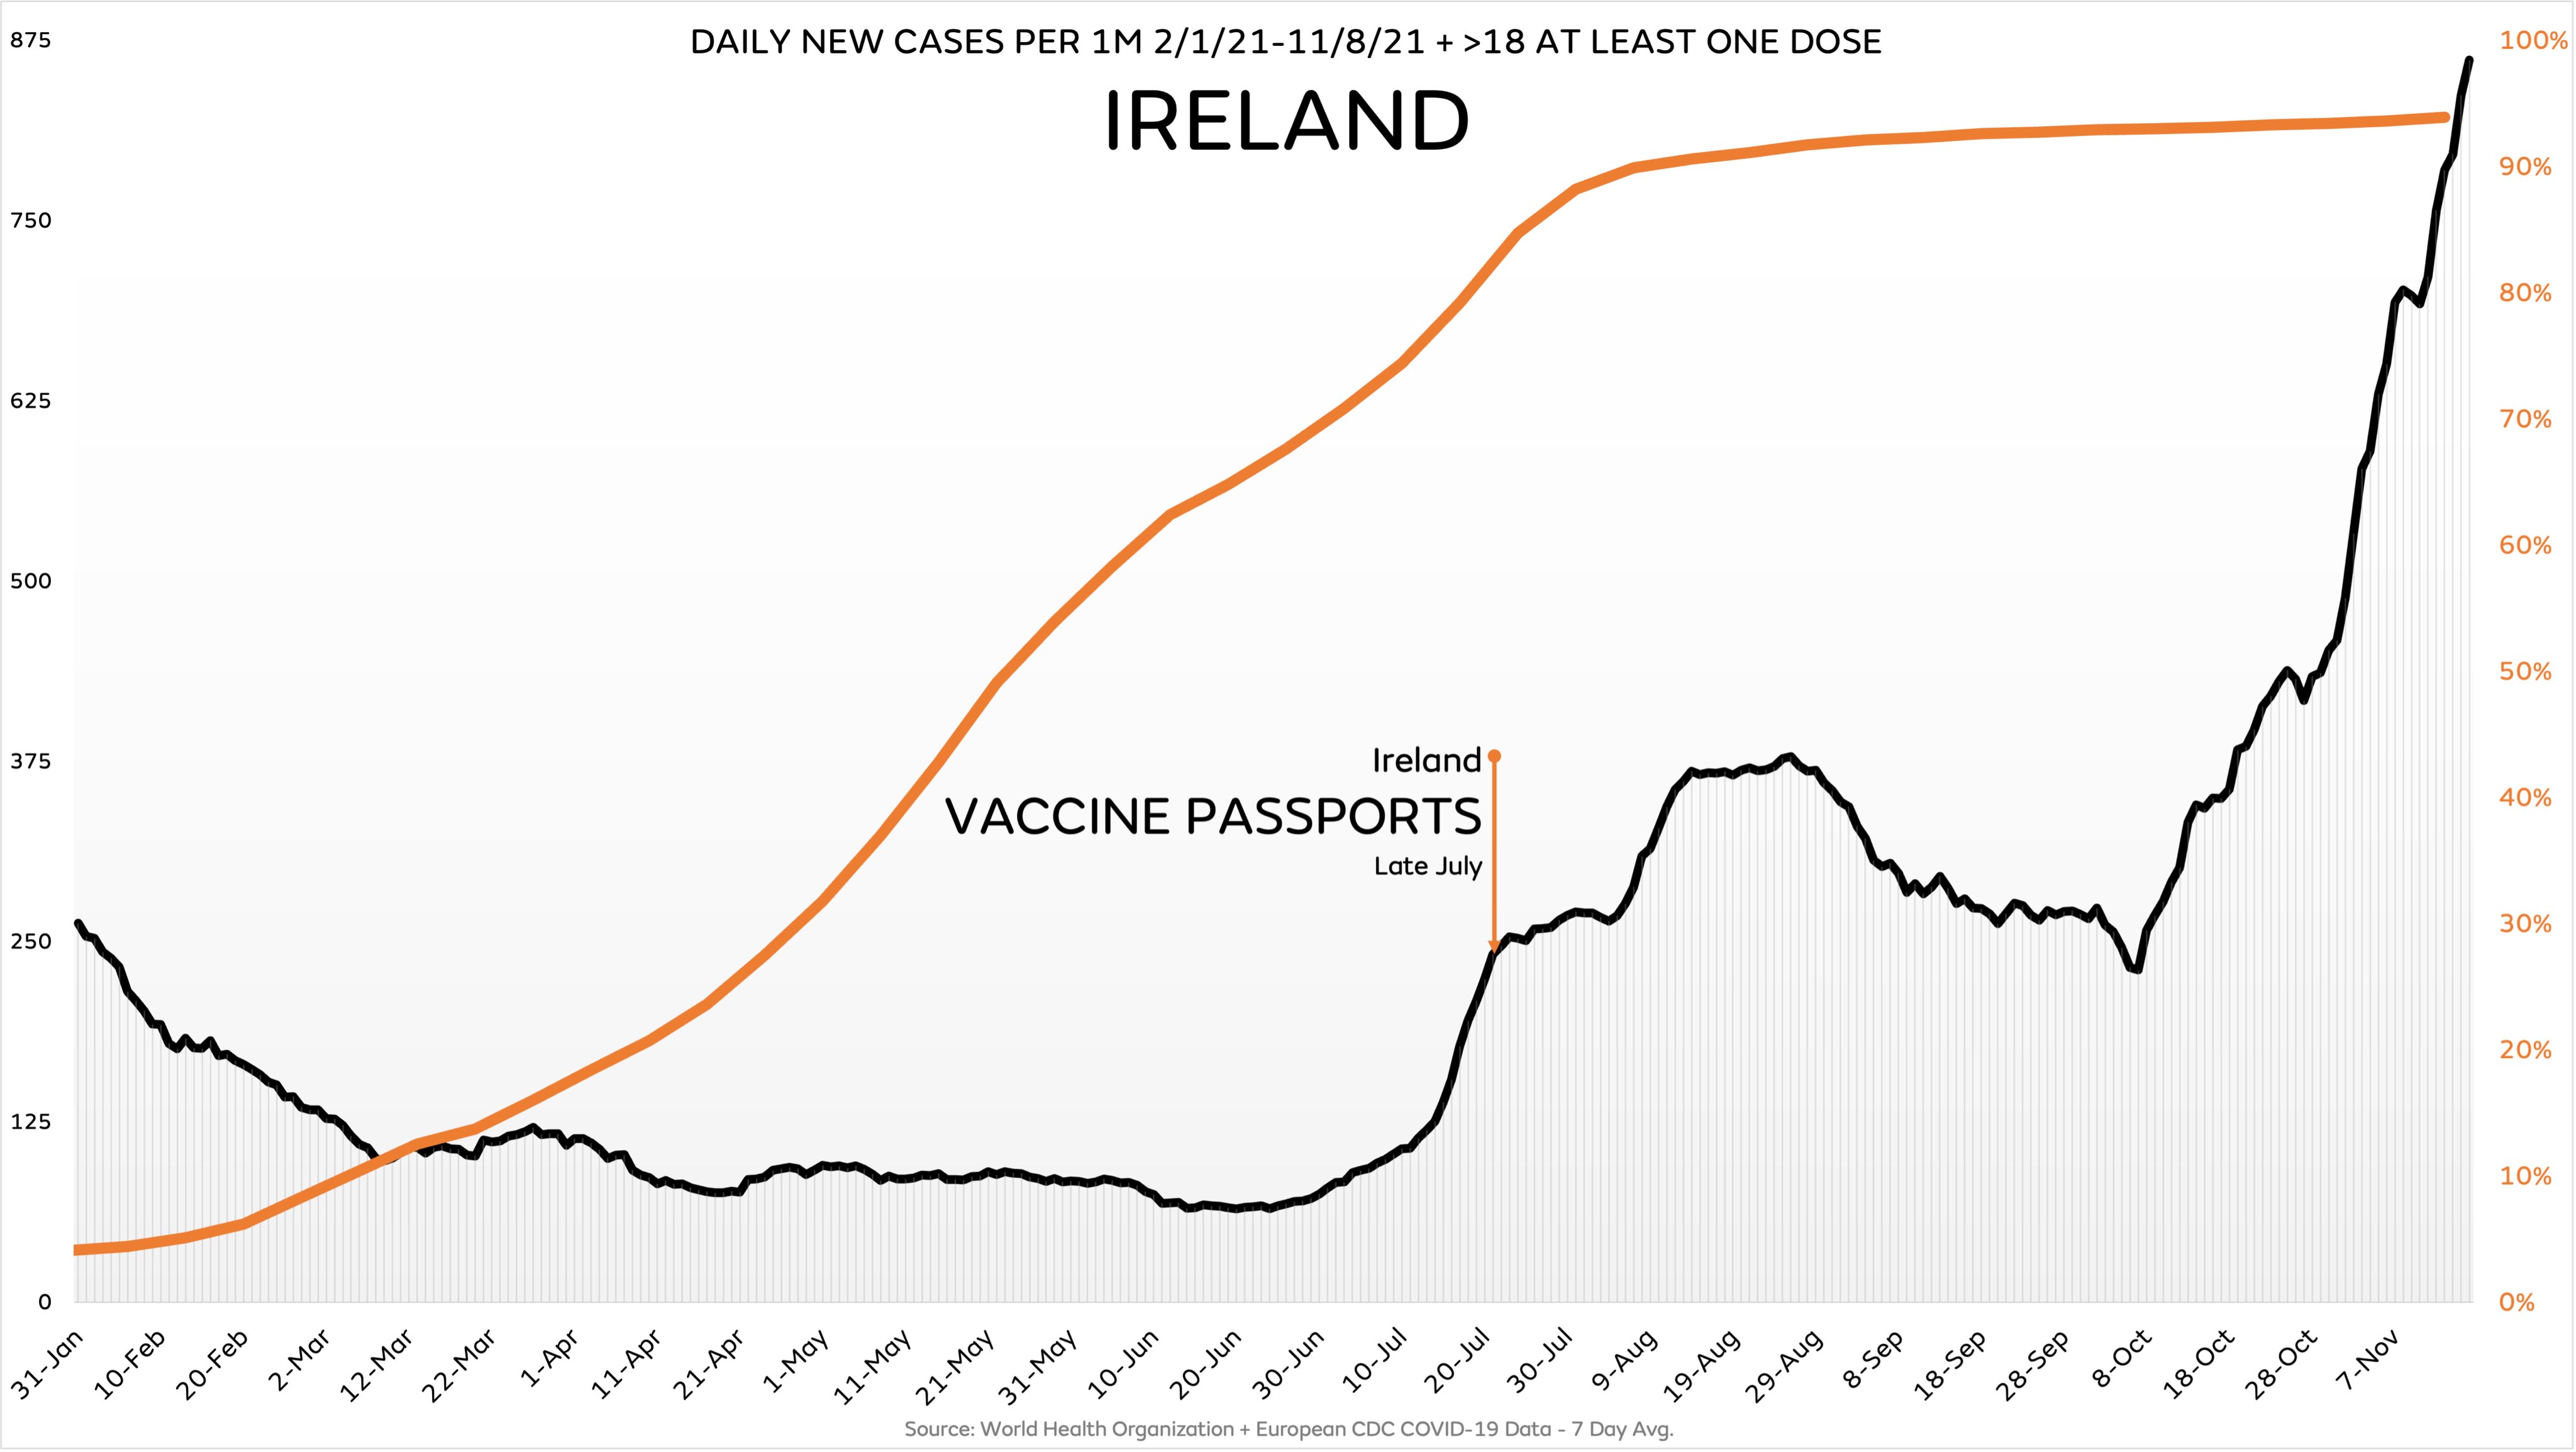 Comparazione fra nuovi contagi e passaporti vaccinali rilasciati in Irlanda